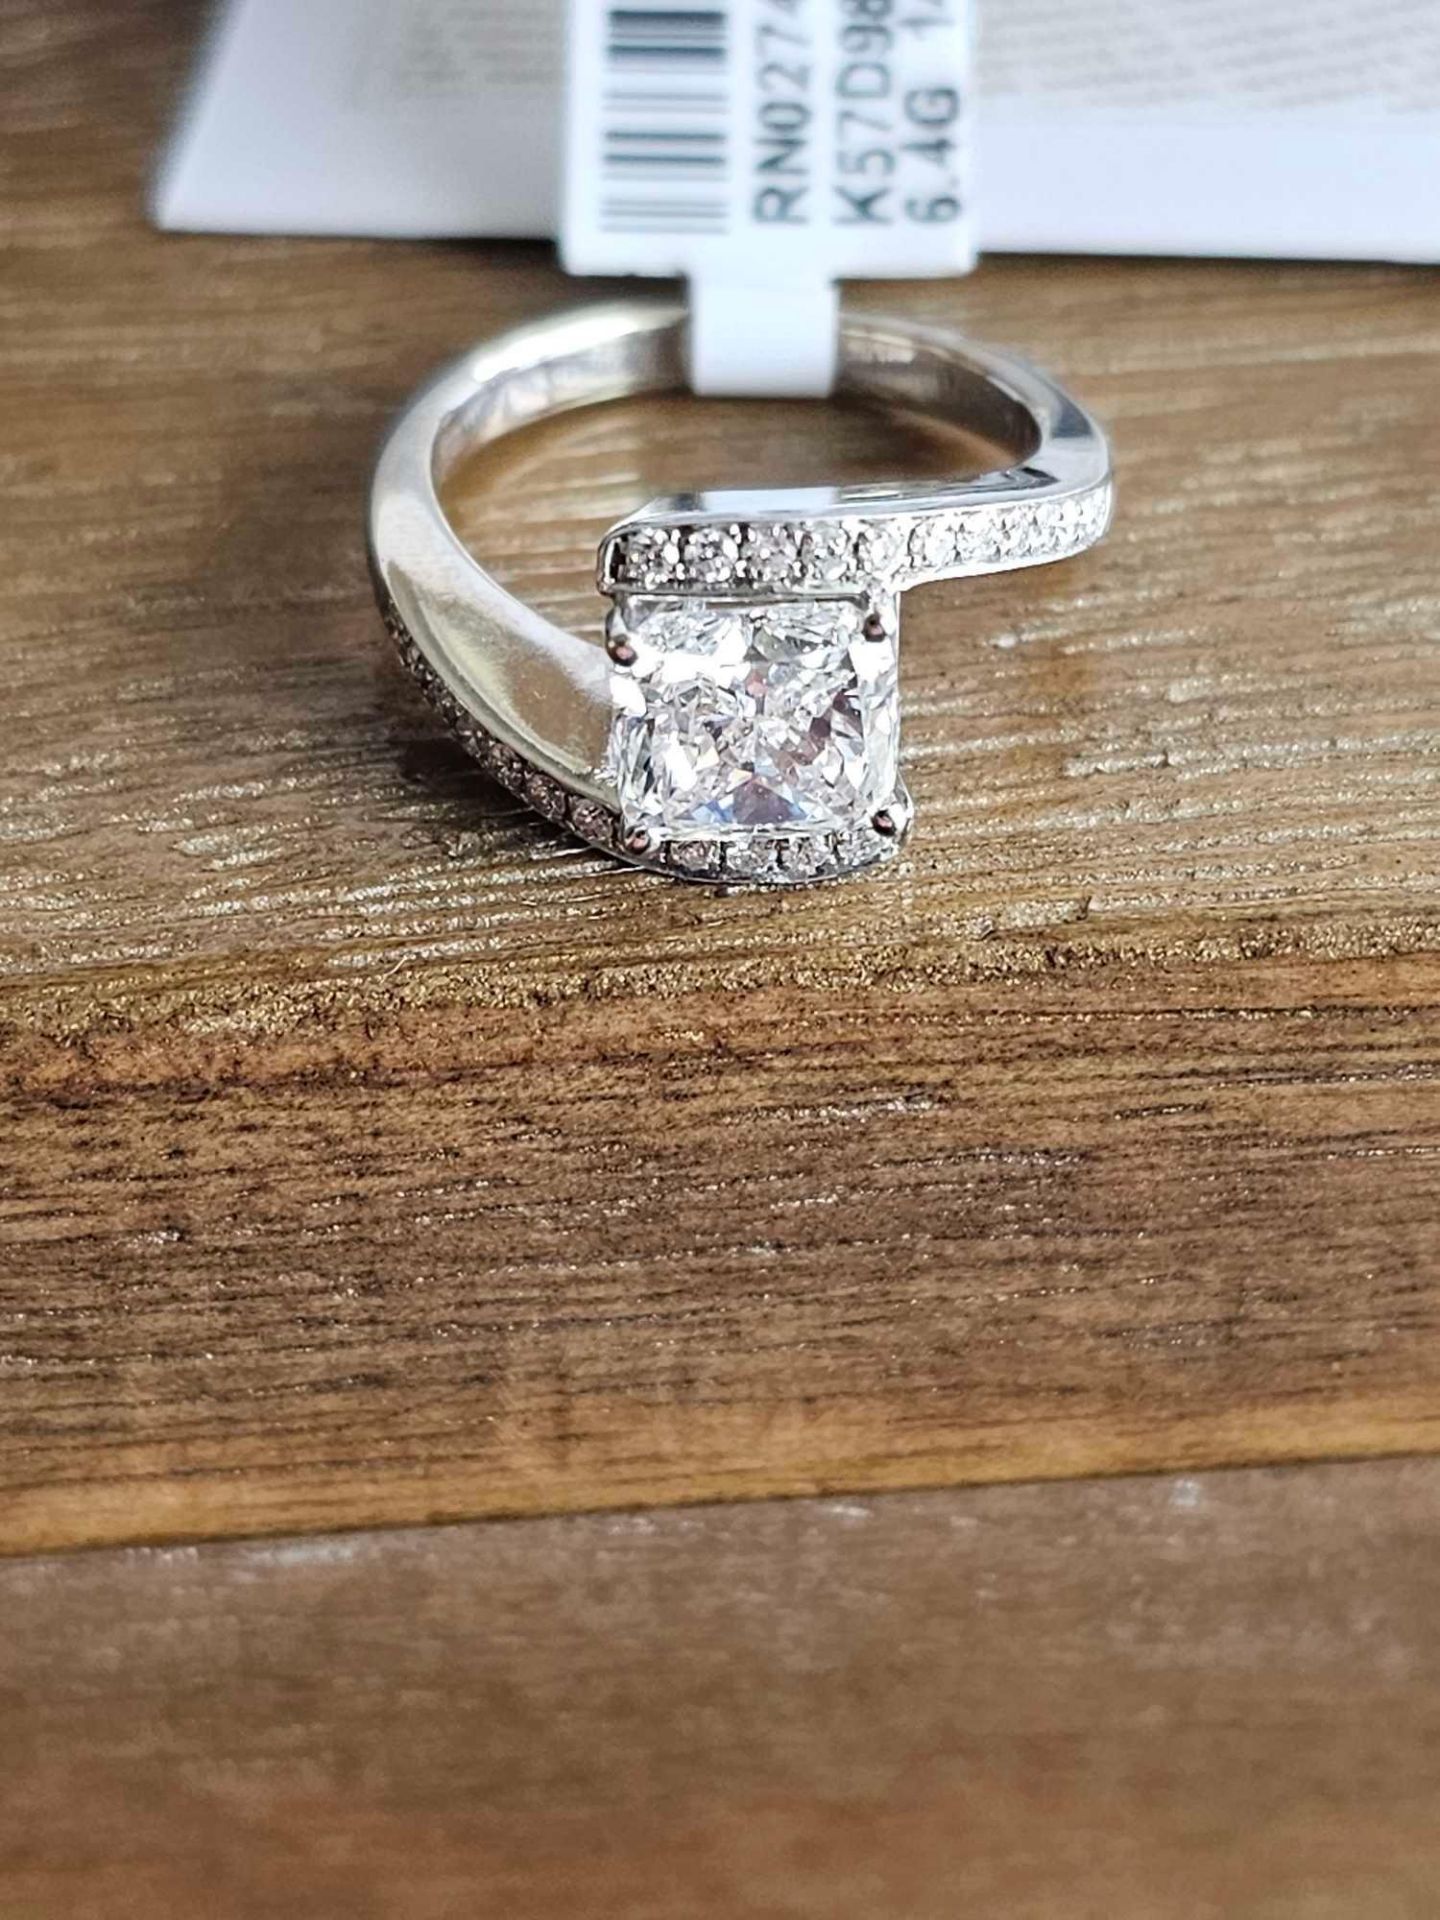 2 CT Diamond Ring (diamond is really nice) - Image 3 of 19